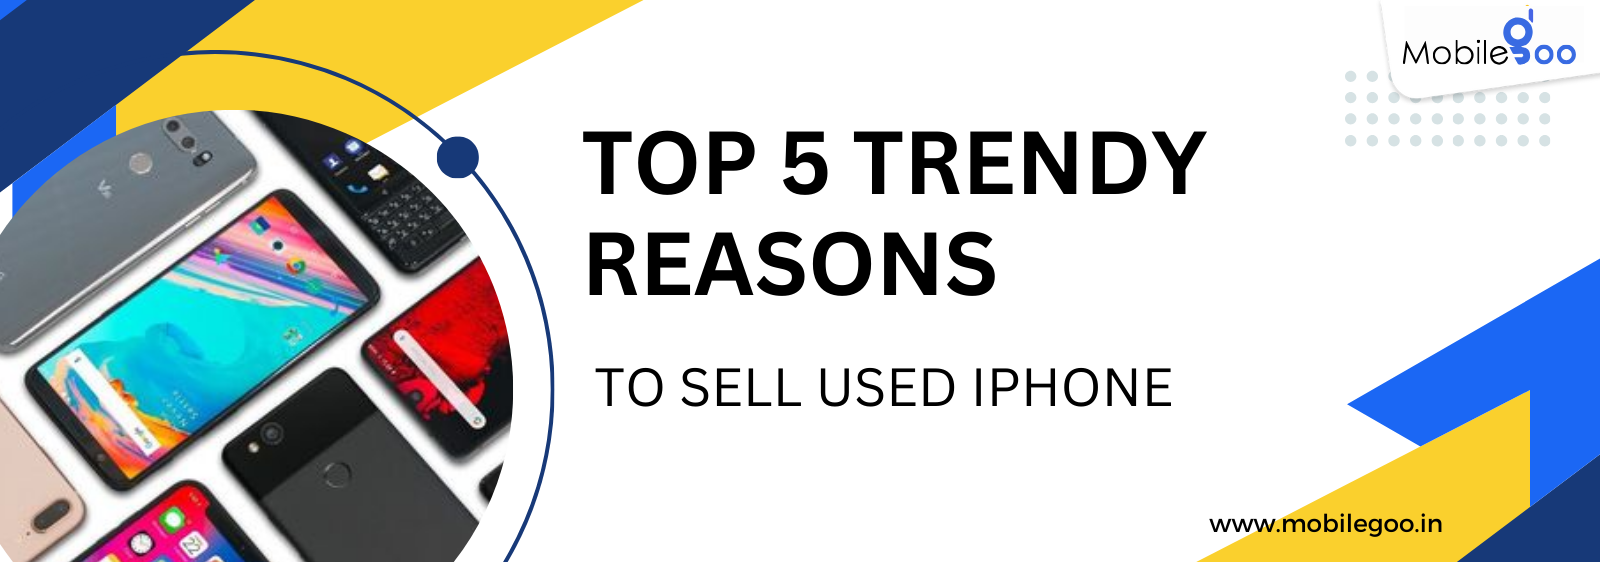 Top 5 trendy reasons